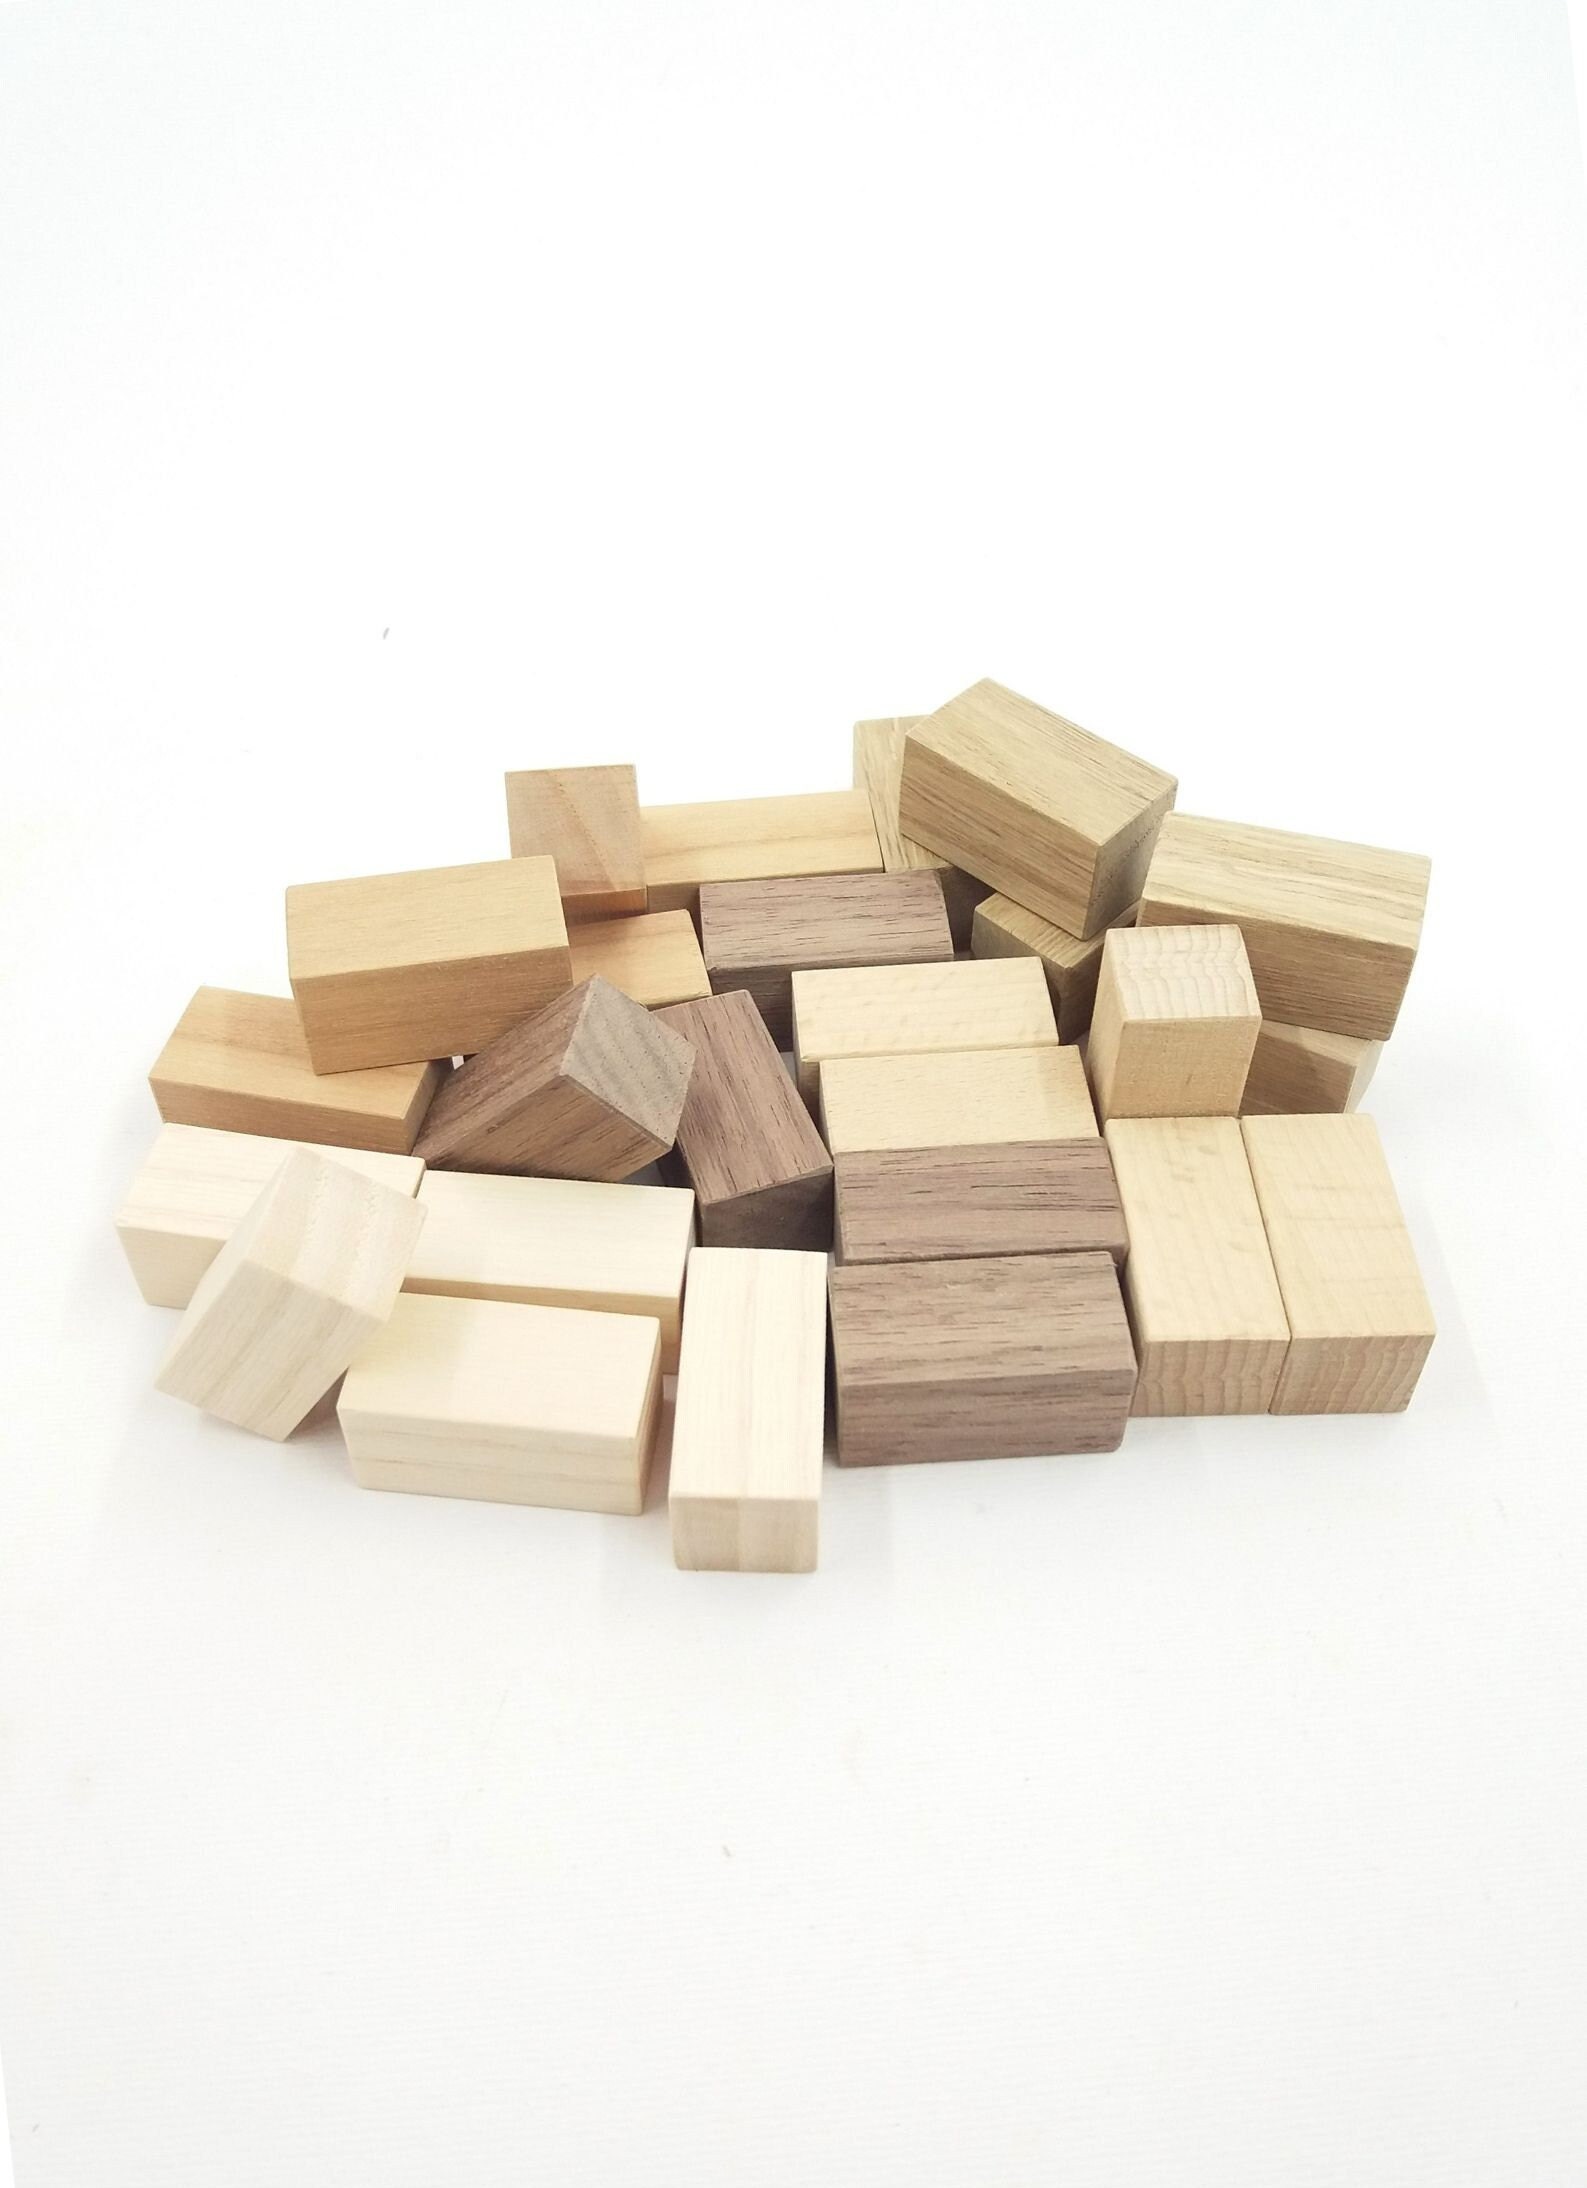 Unfinished Wood Blocks for Crafts - 4 pc set – BKV Decor